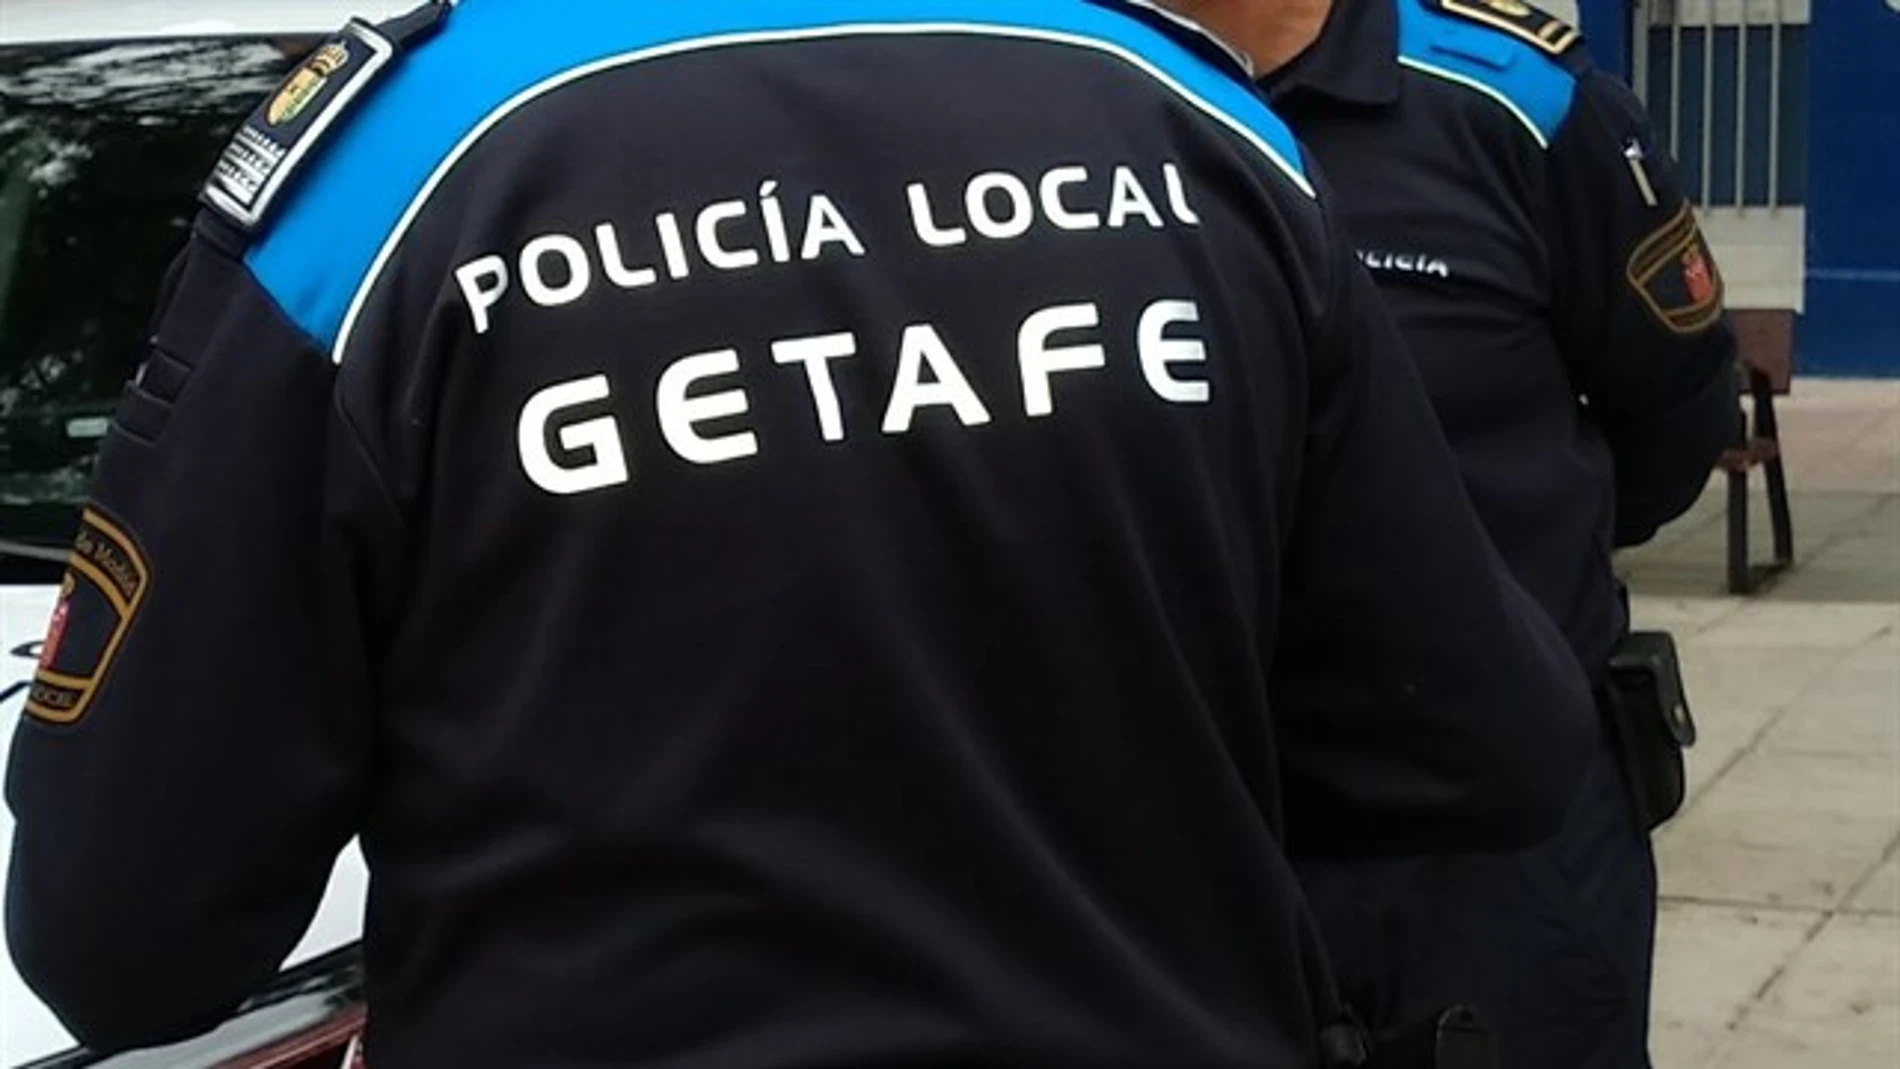 Policía local de Getafe 